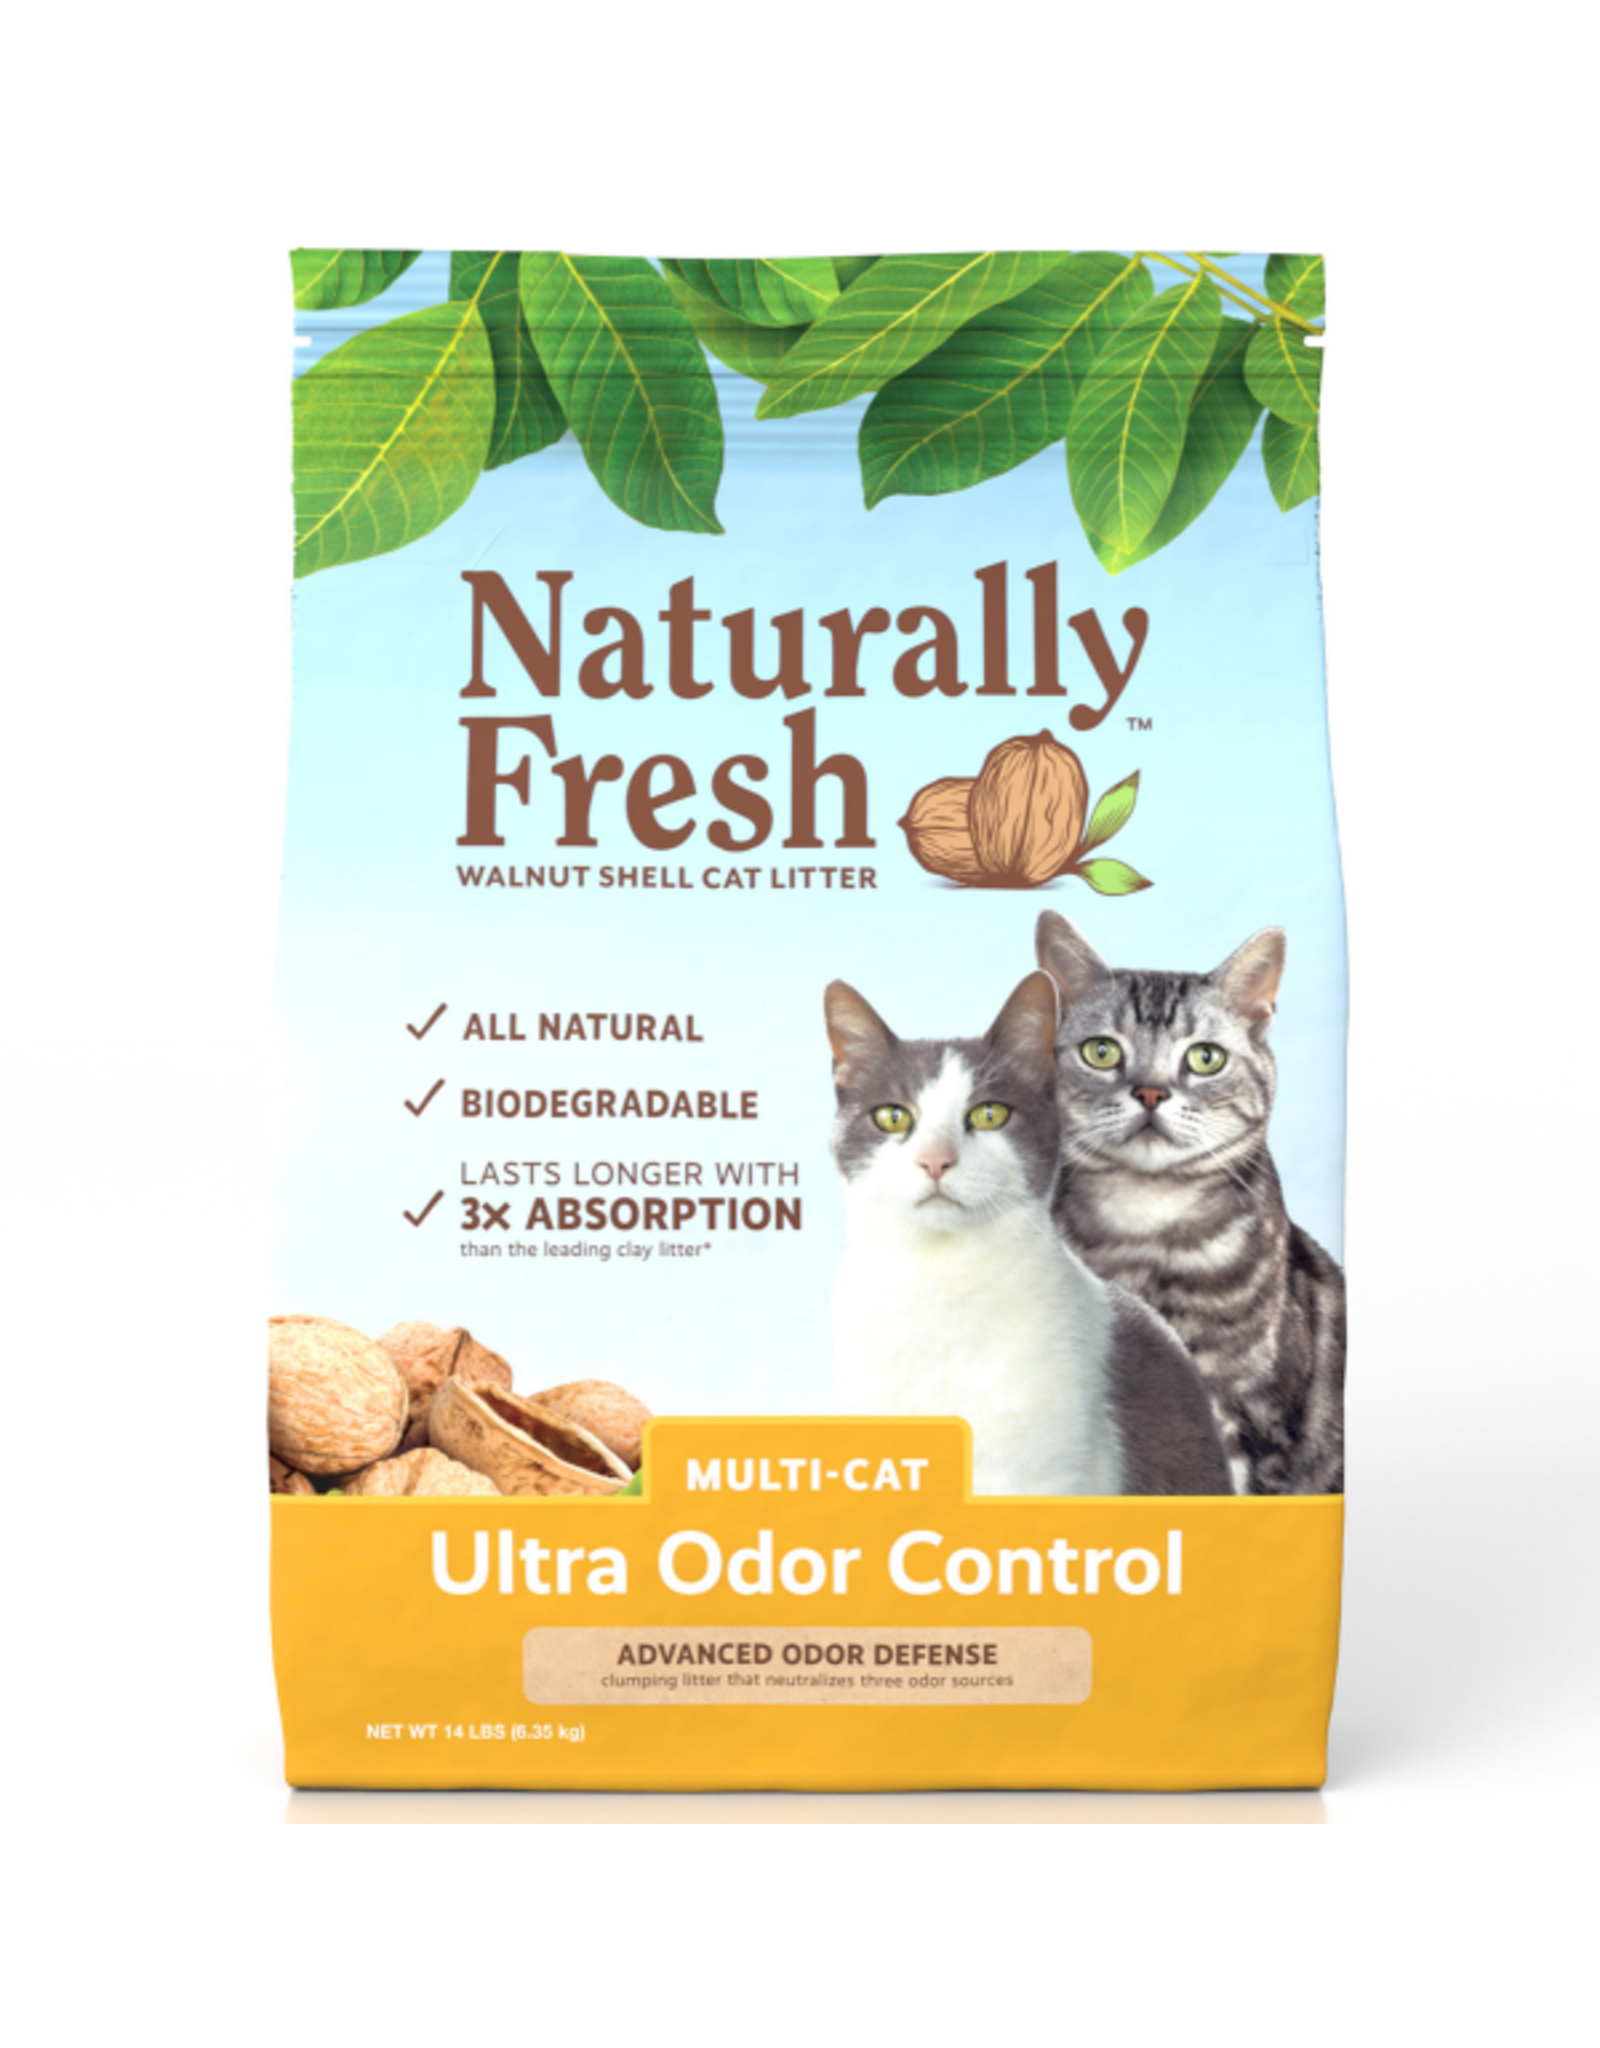 Naturally Fresh Walnut Shell Cat Litter